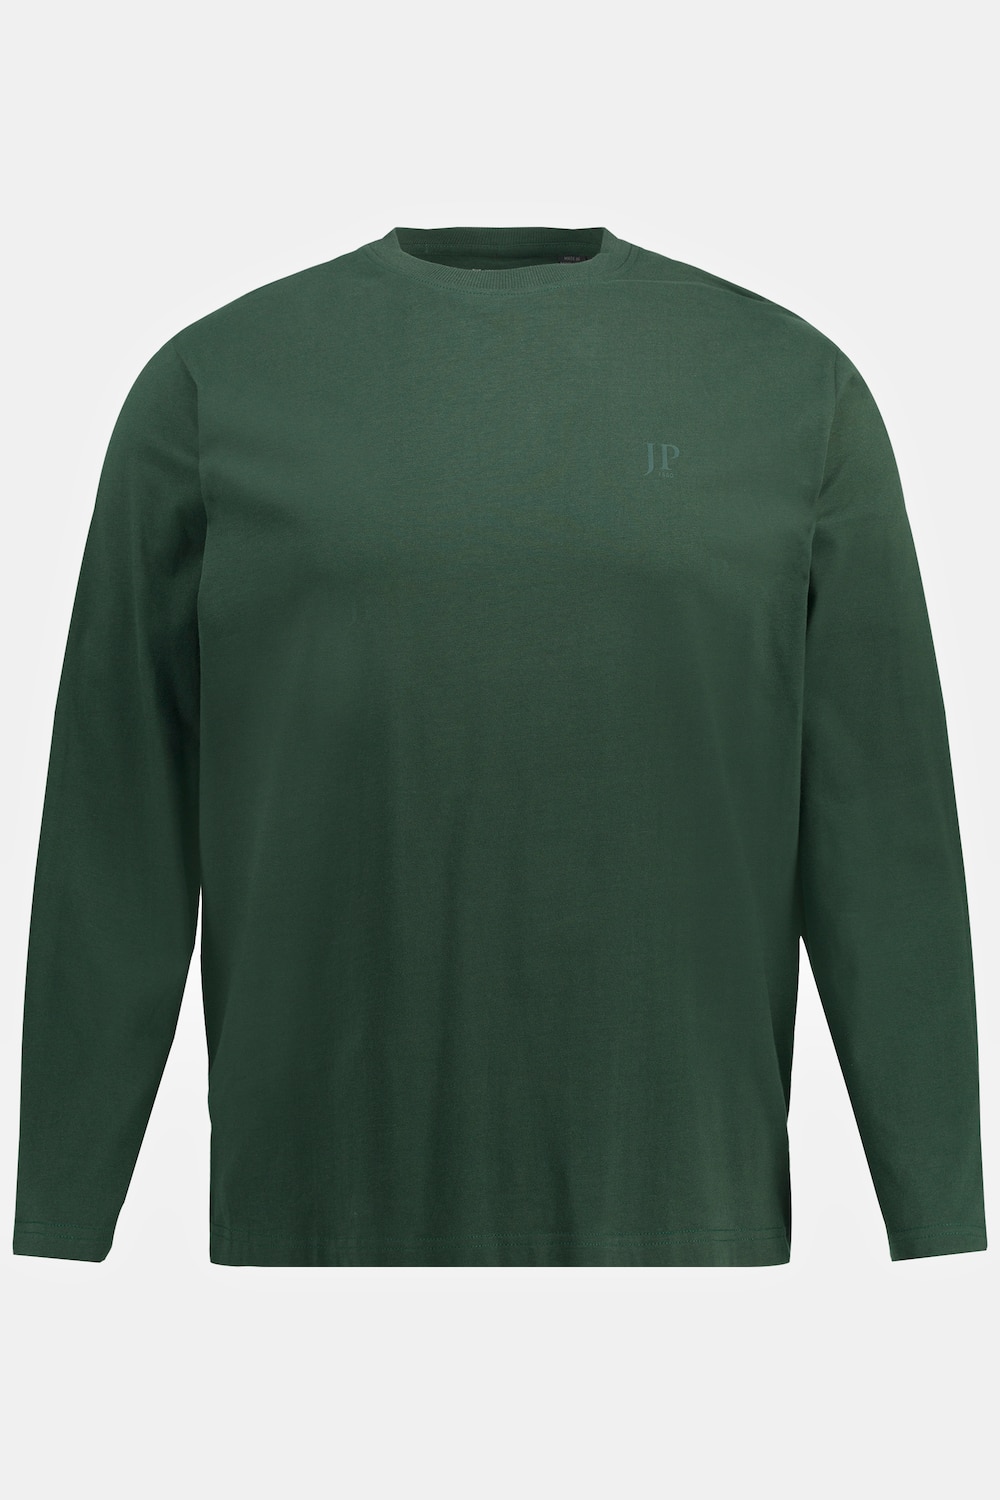 Grote Maten shirt, Heren, groen, Maat: 8XL, Katoen, JP1880